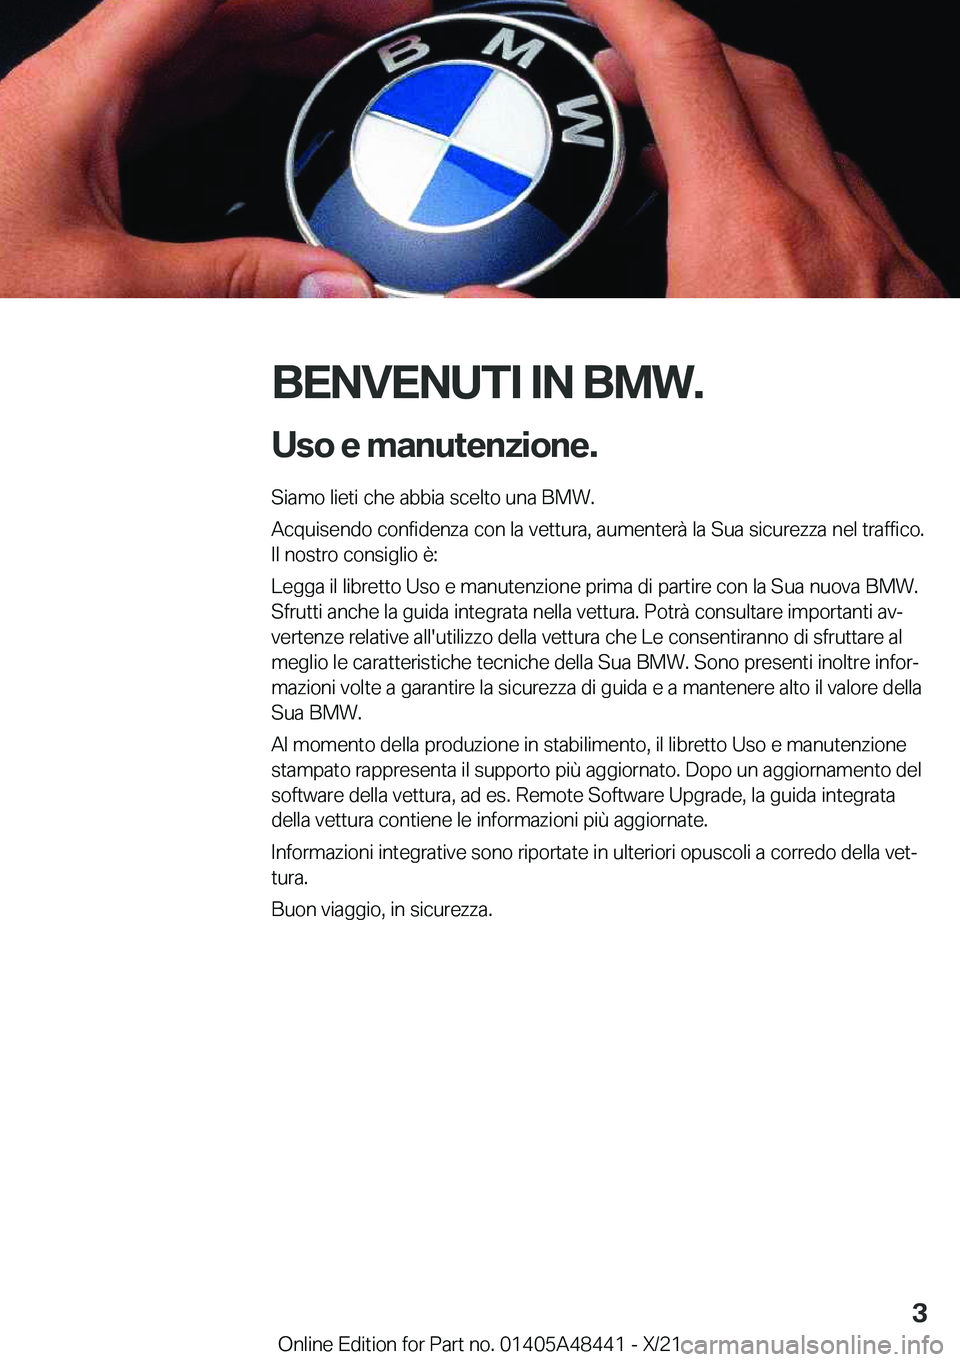 BMW X7 2022  Libretti Di Uso E manutenzione (in Italian) �B�E�N�V�E�N�U�T�I��I�N��B�M�W�.�U�s�o��e��m�a�n�u�t�e�n�z�i�o�n�e�.
�S�i�a�m�o��l�i�e�t�i��c�h�e��a�b�b�i�a��s�c�e�l�t�o��u�n�a��B�M�W�.
�A�c�q�u�i�s�e�n�d�o��c�o�n�f�i�d�e�n�z�a��c�o�n�